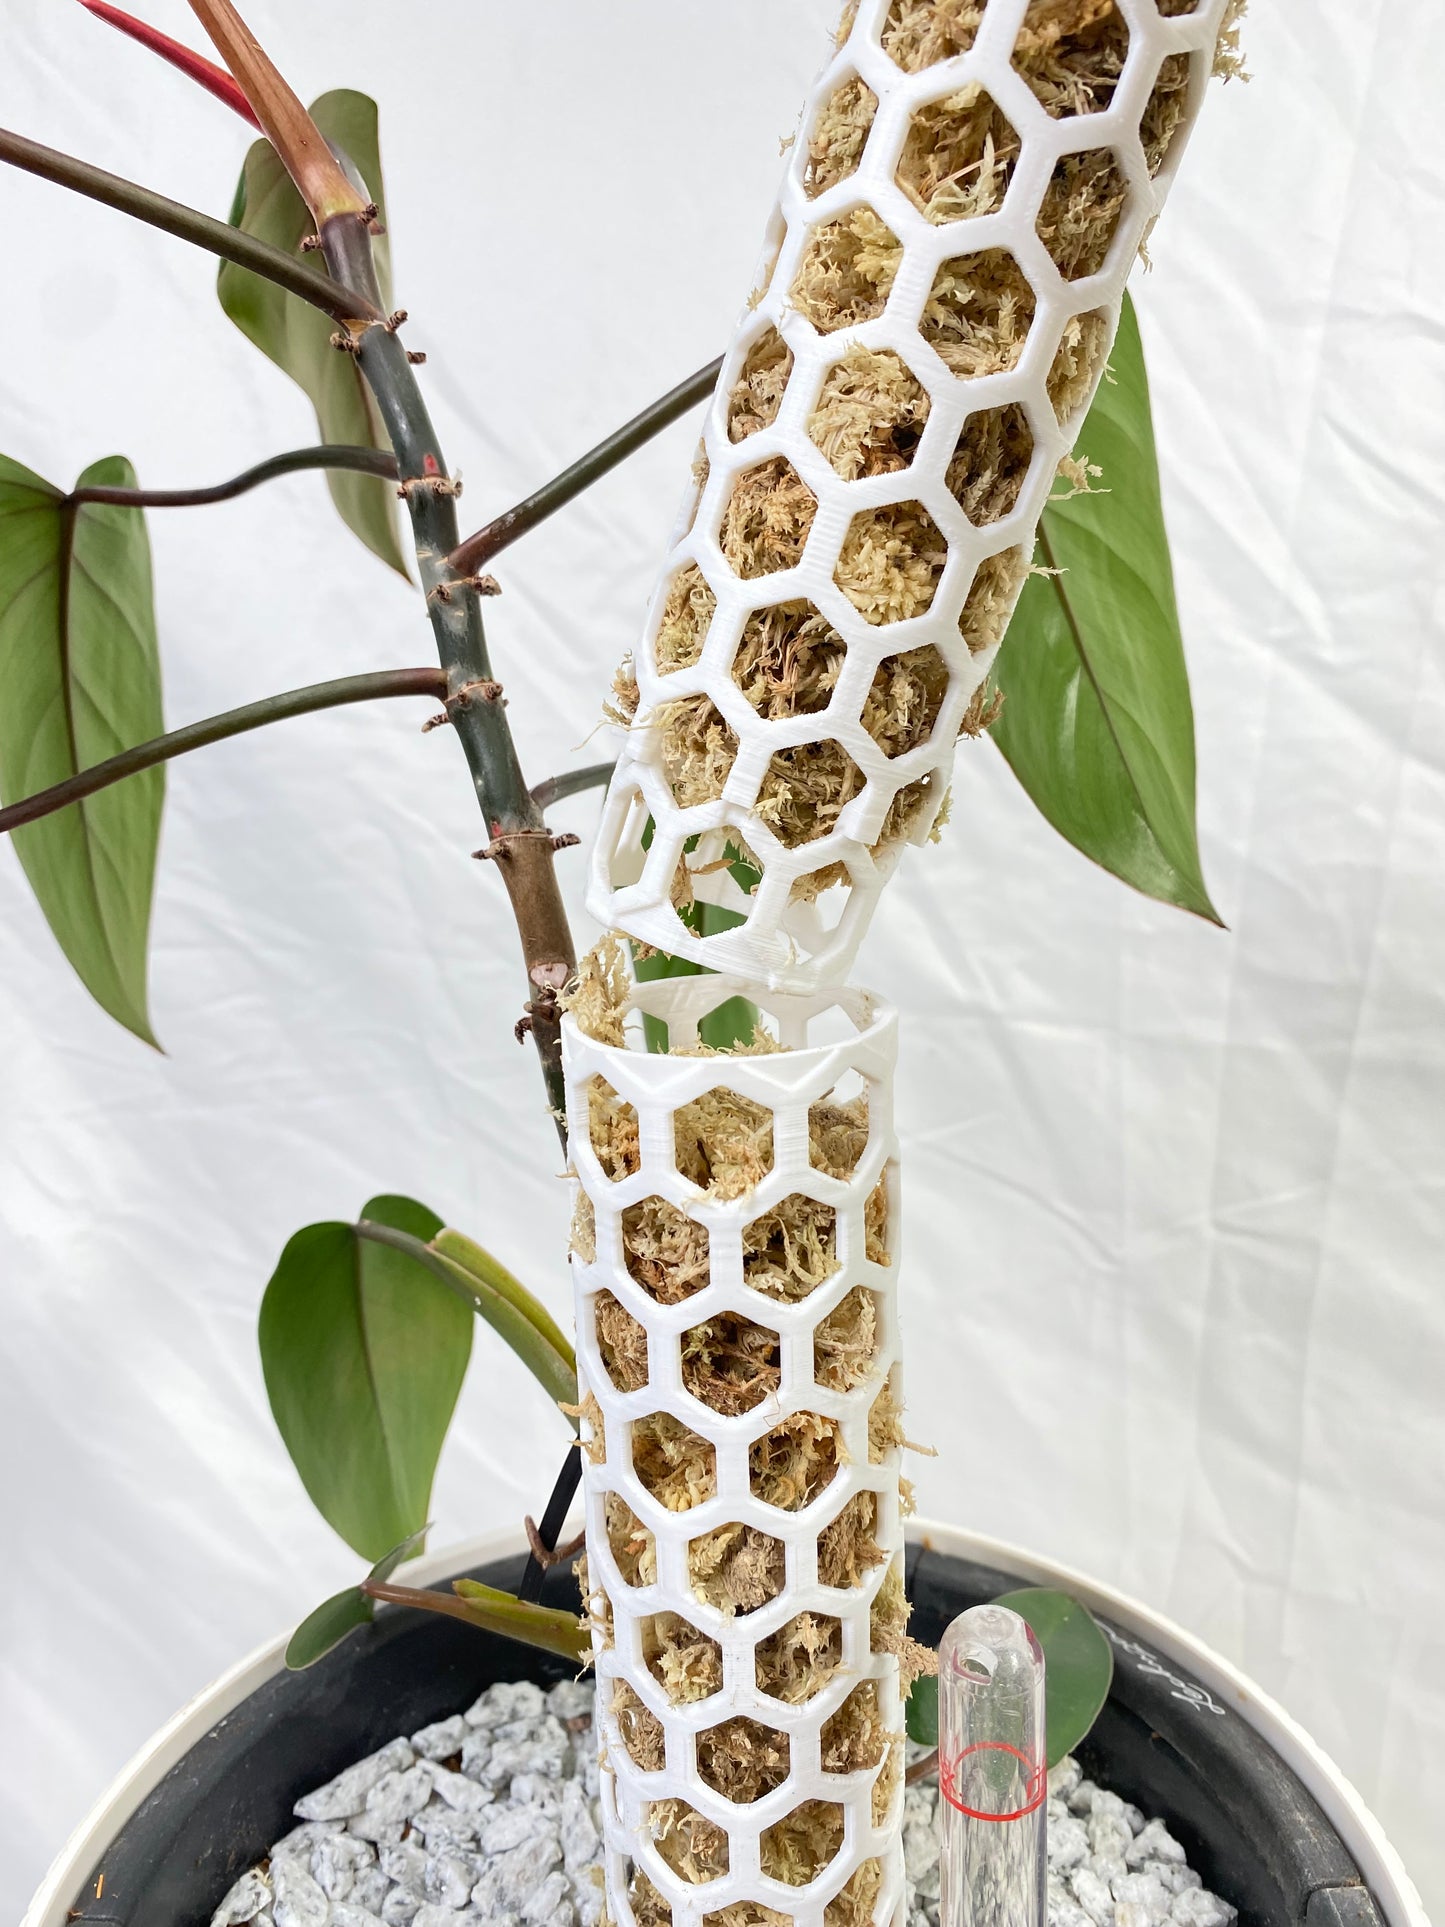 1.92″Φ/Medium Designer Moss Pole - Modular Extendable Plant Moss Pole with Self-Watering Features